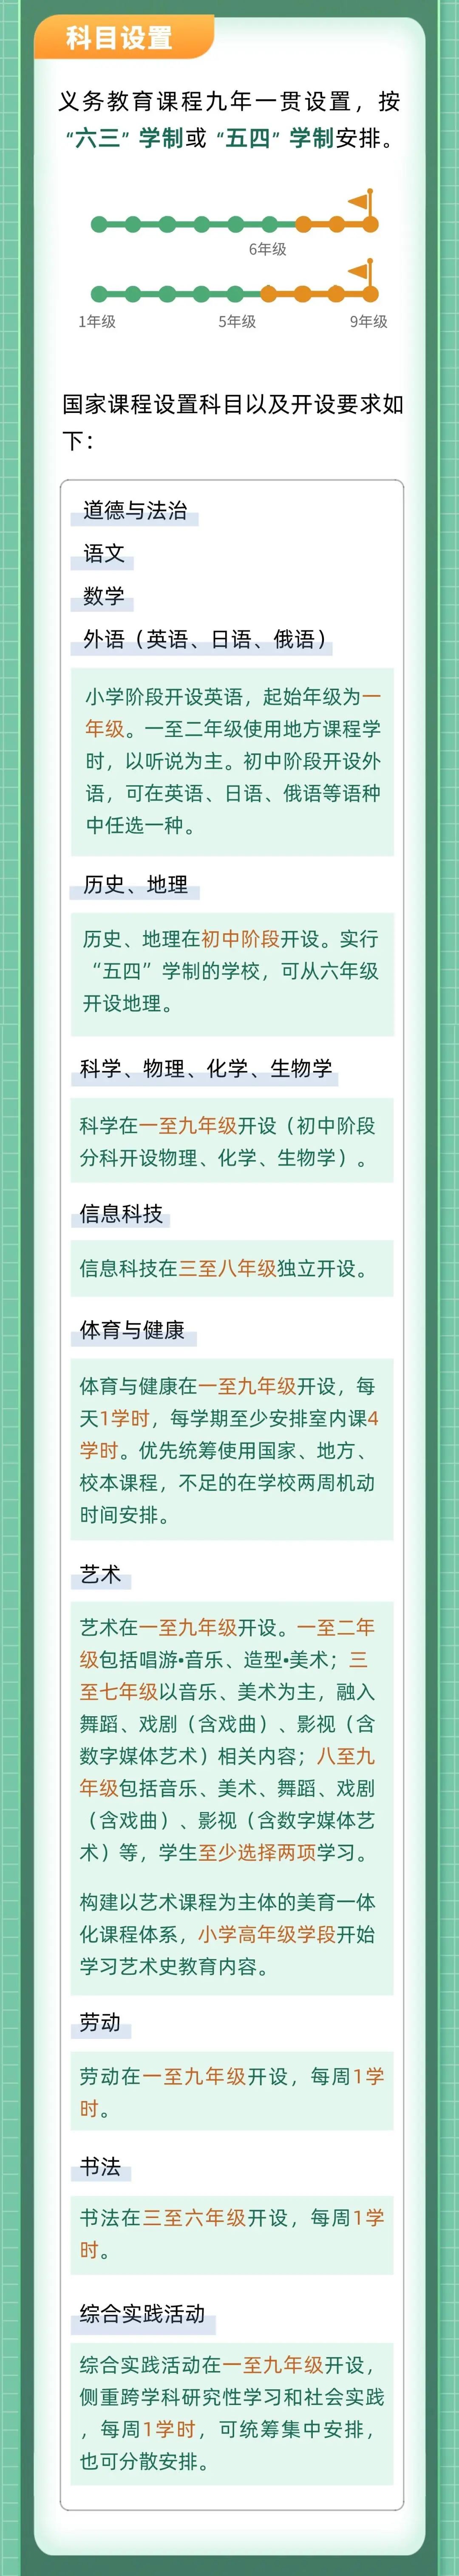 《北京市义务教育课程实施办法》公布